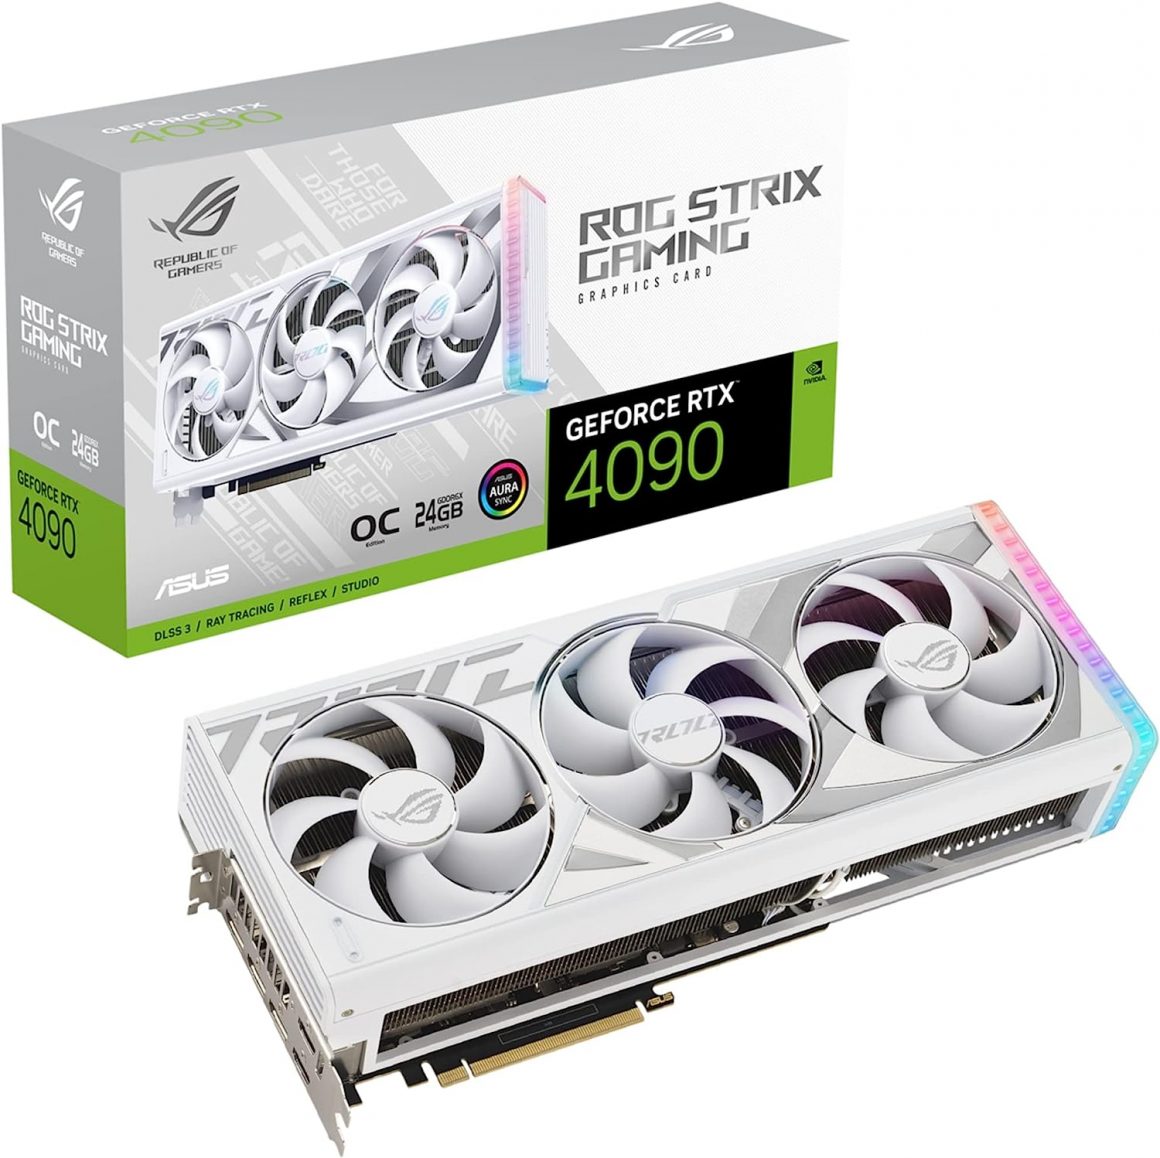 ASUS ROG STRIX NVIDIA GeForce RTX 4090 OC